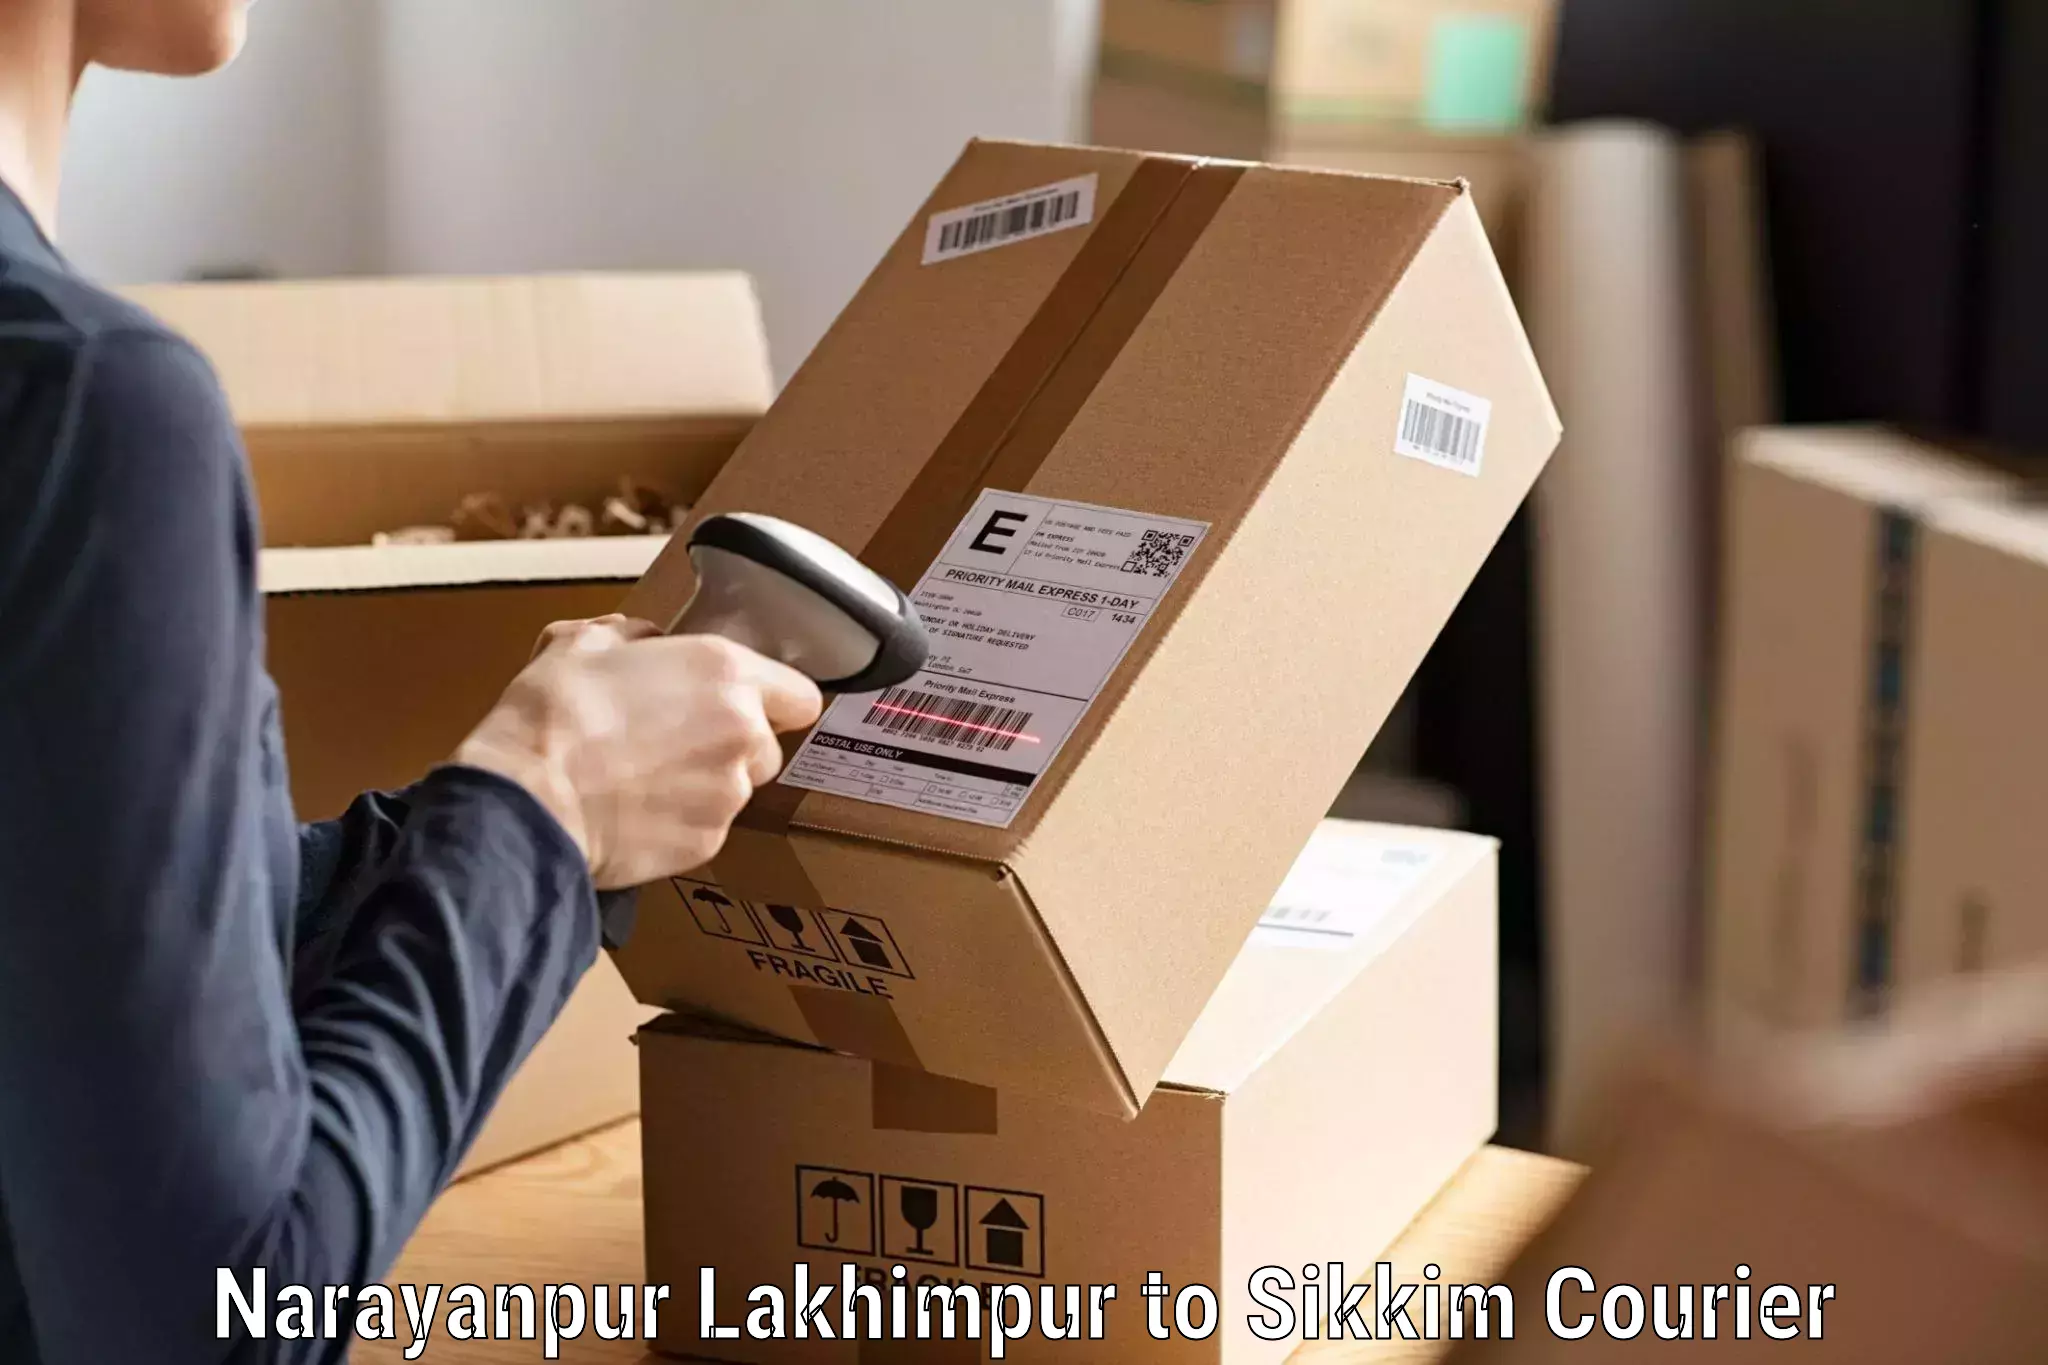 Efficient cargo handling Narayanpur Lakhimpur to Ranipool